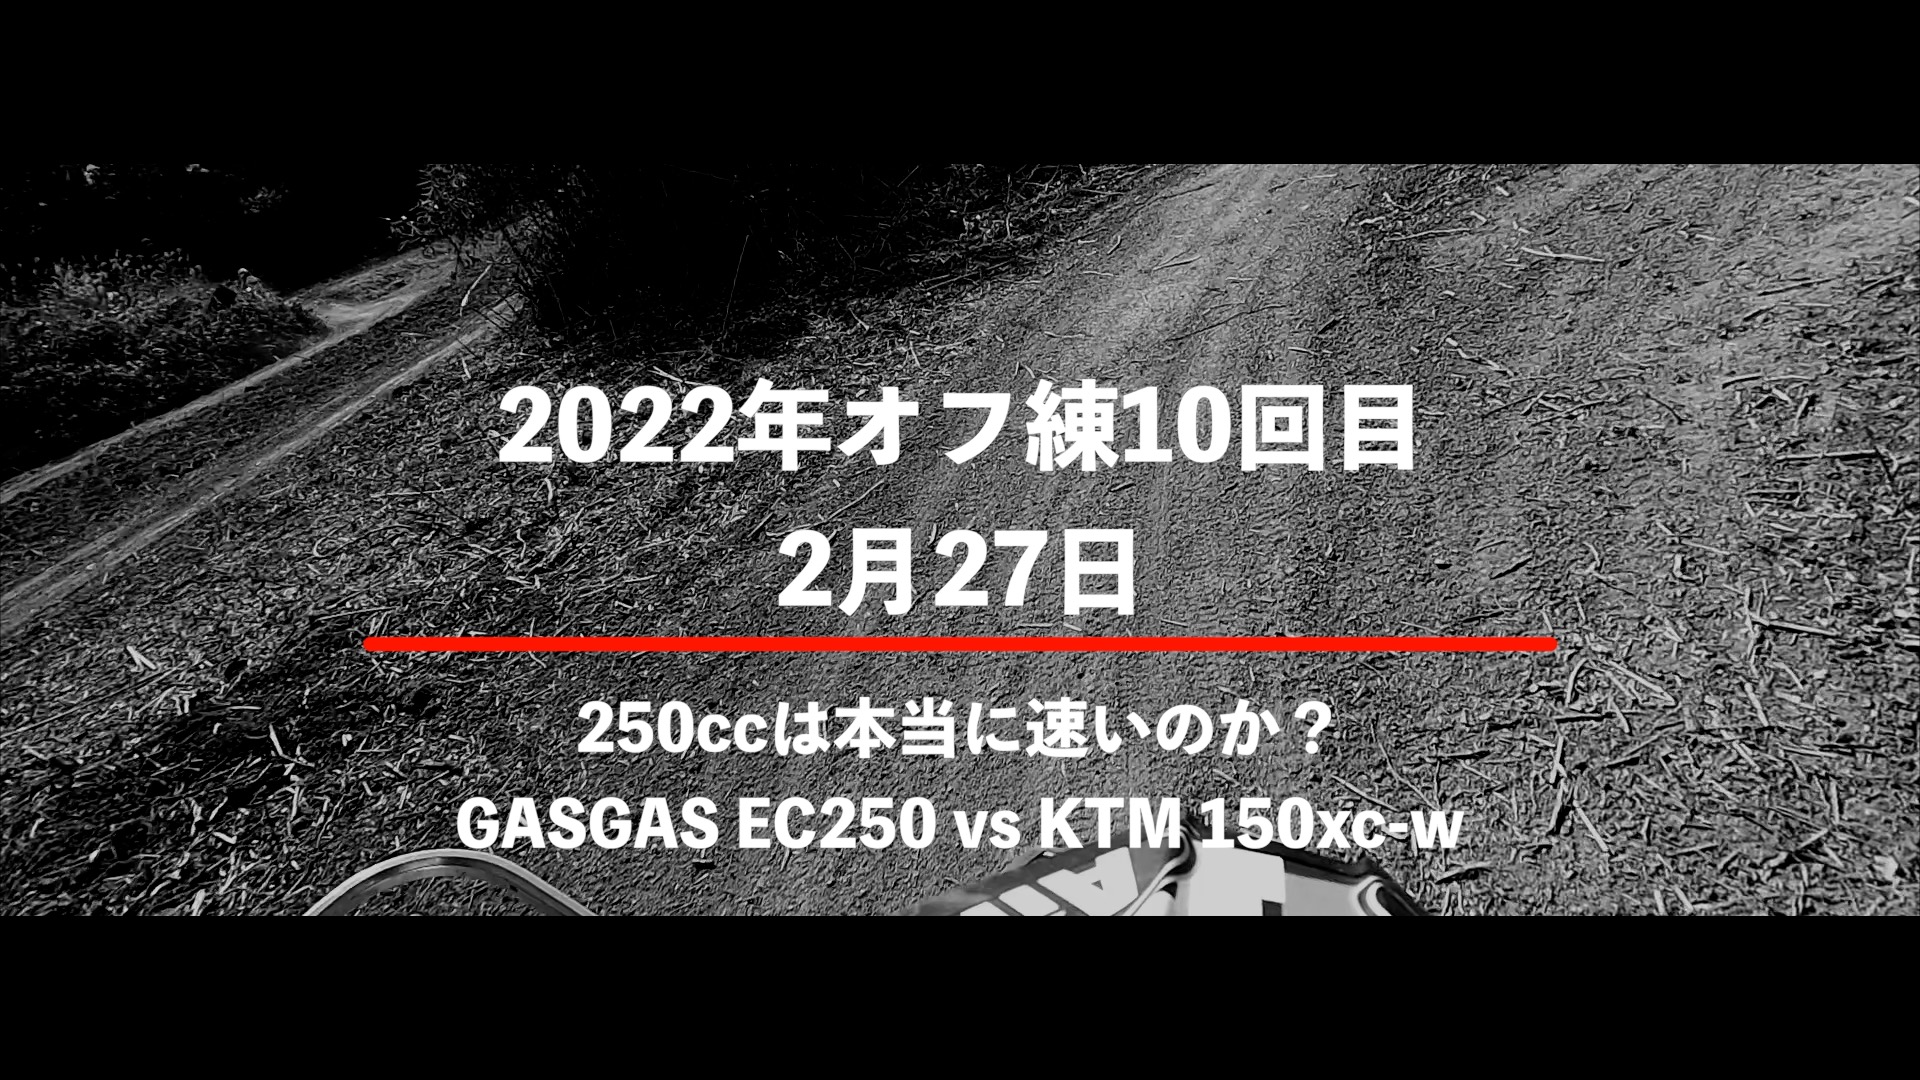 KTM 150xc-wとGASGAS EC250の乗り比べ